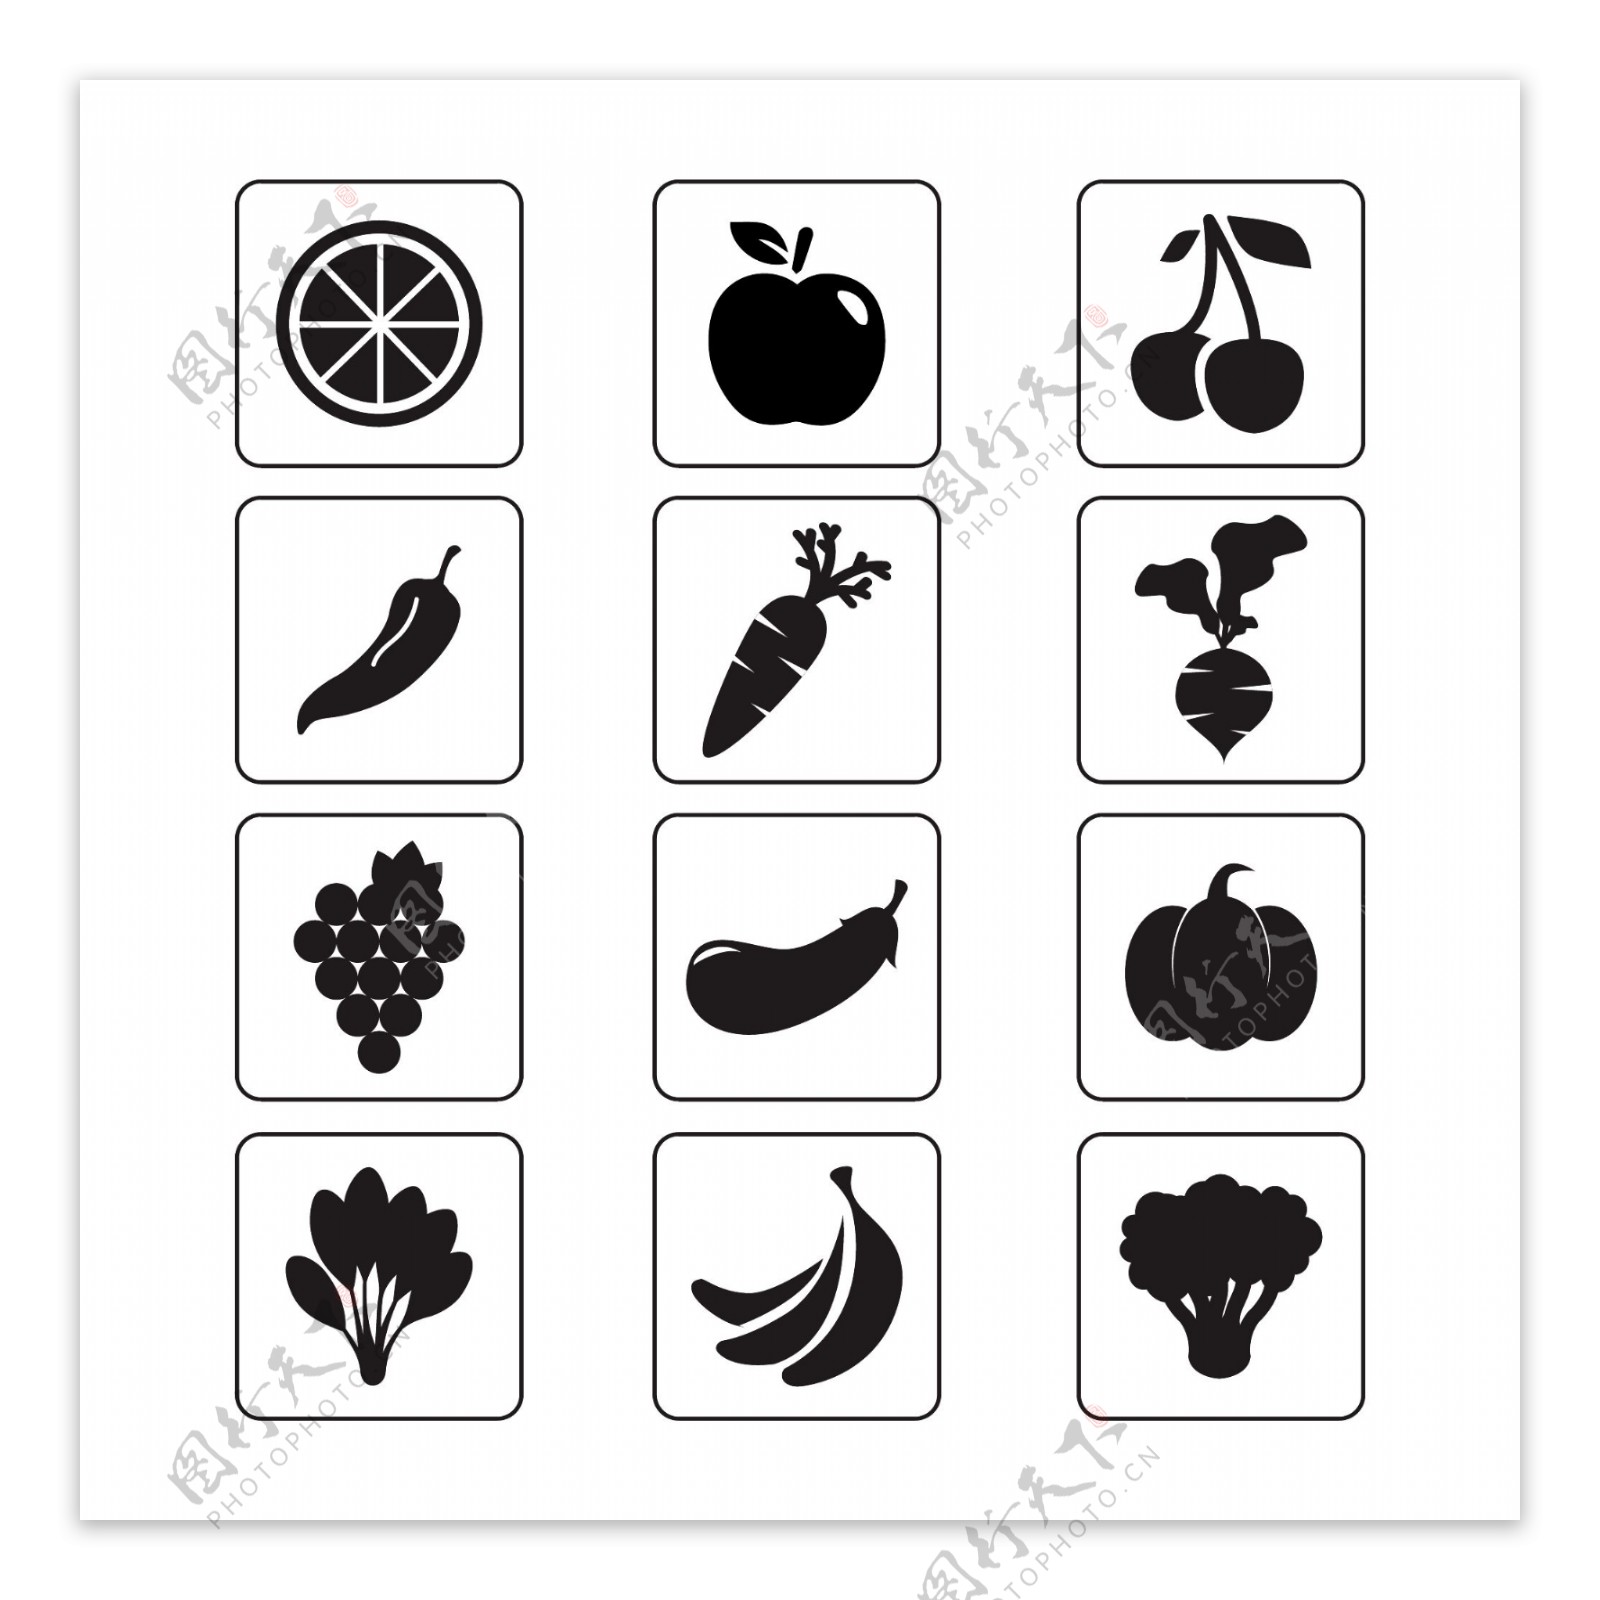 蔬菜和水果图标